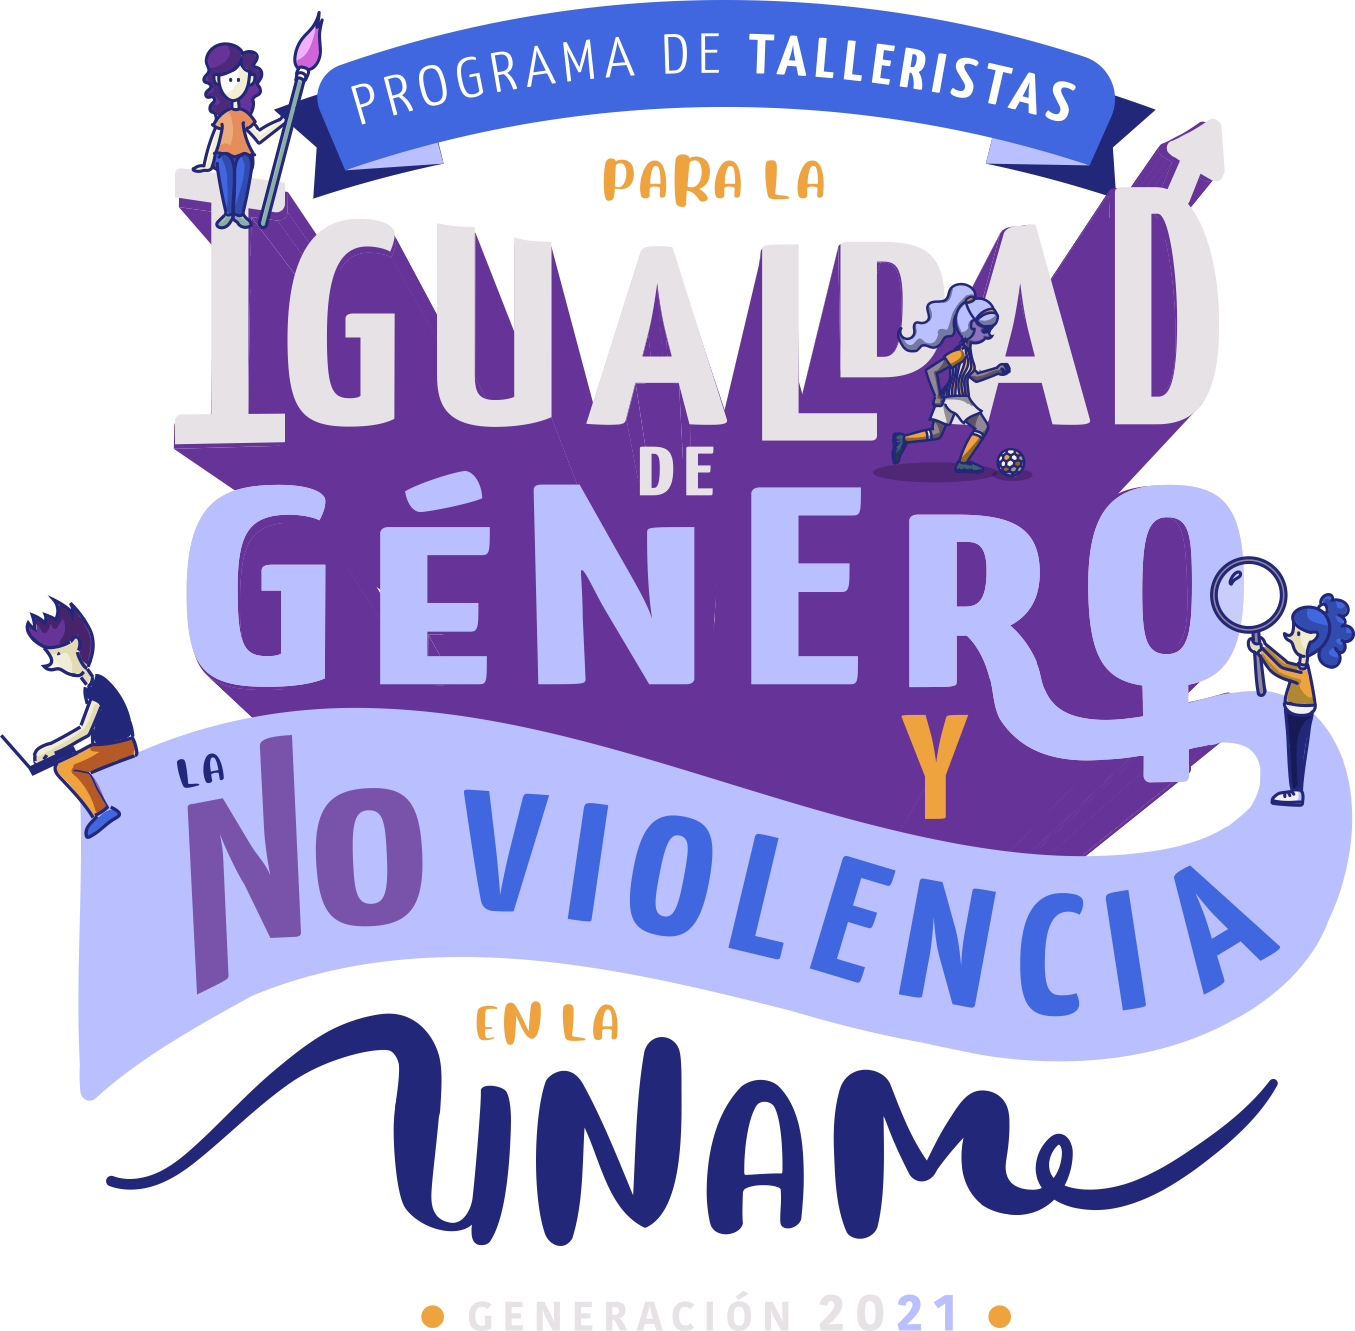 PROGRAMA DE TALLERISTAS PARA LA IGUALDAD DE GÉNERO Y LA NO VIOLENCIA EN LA UNAM